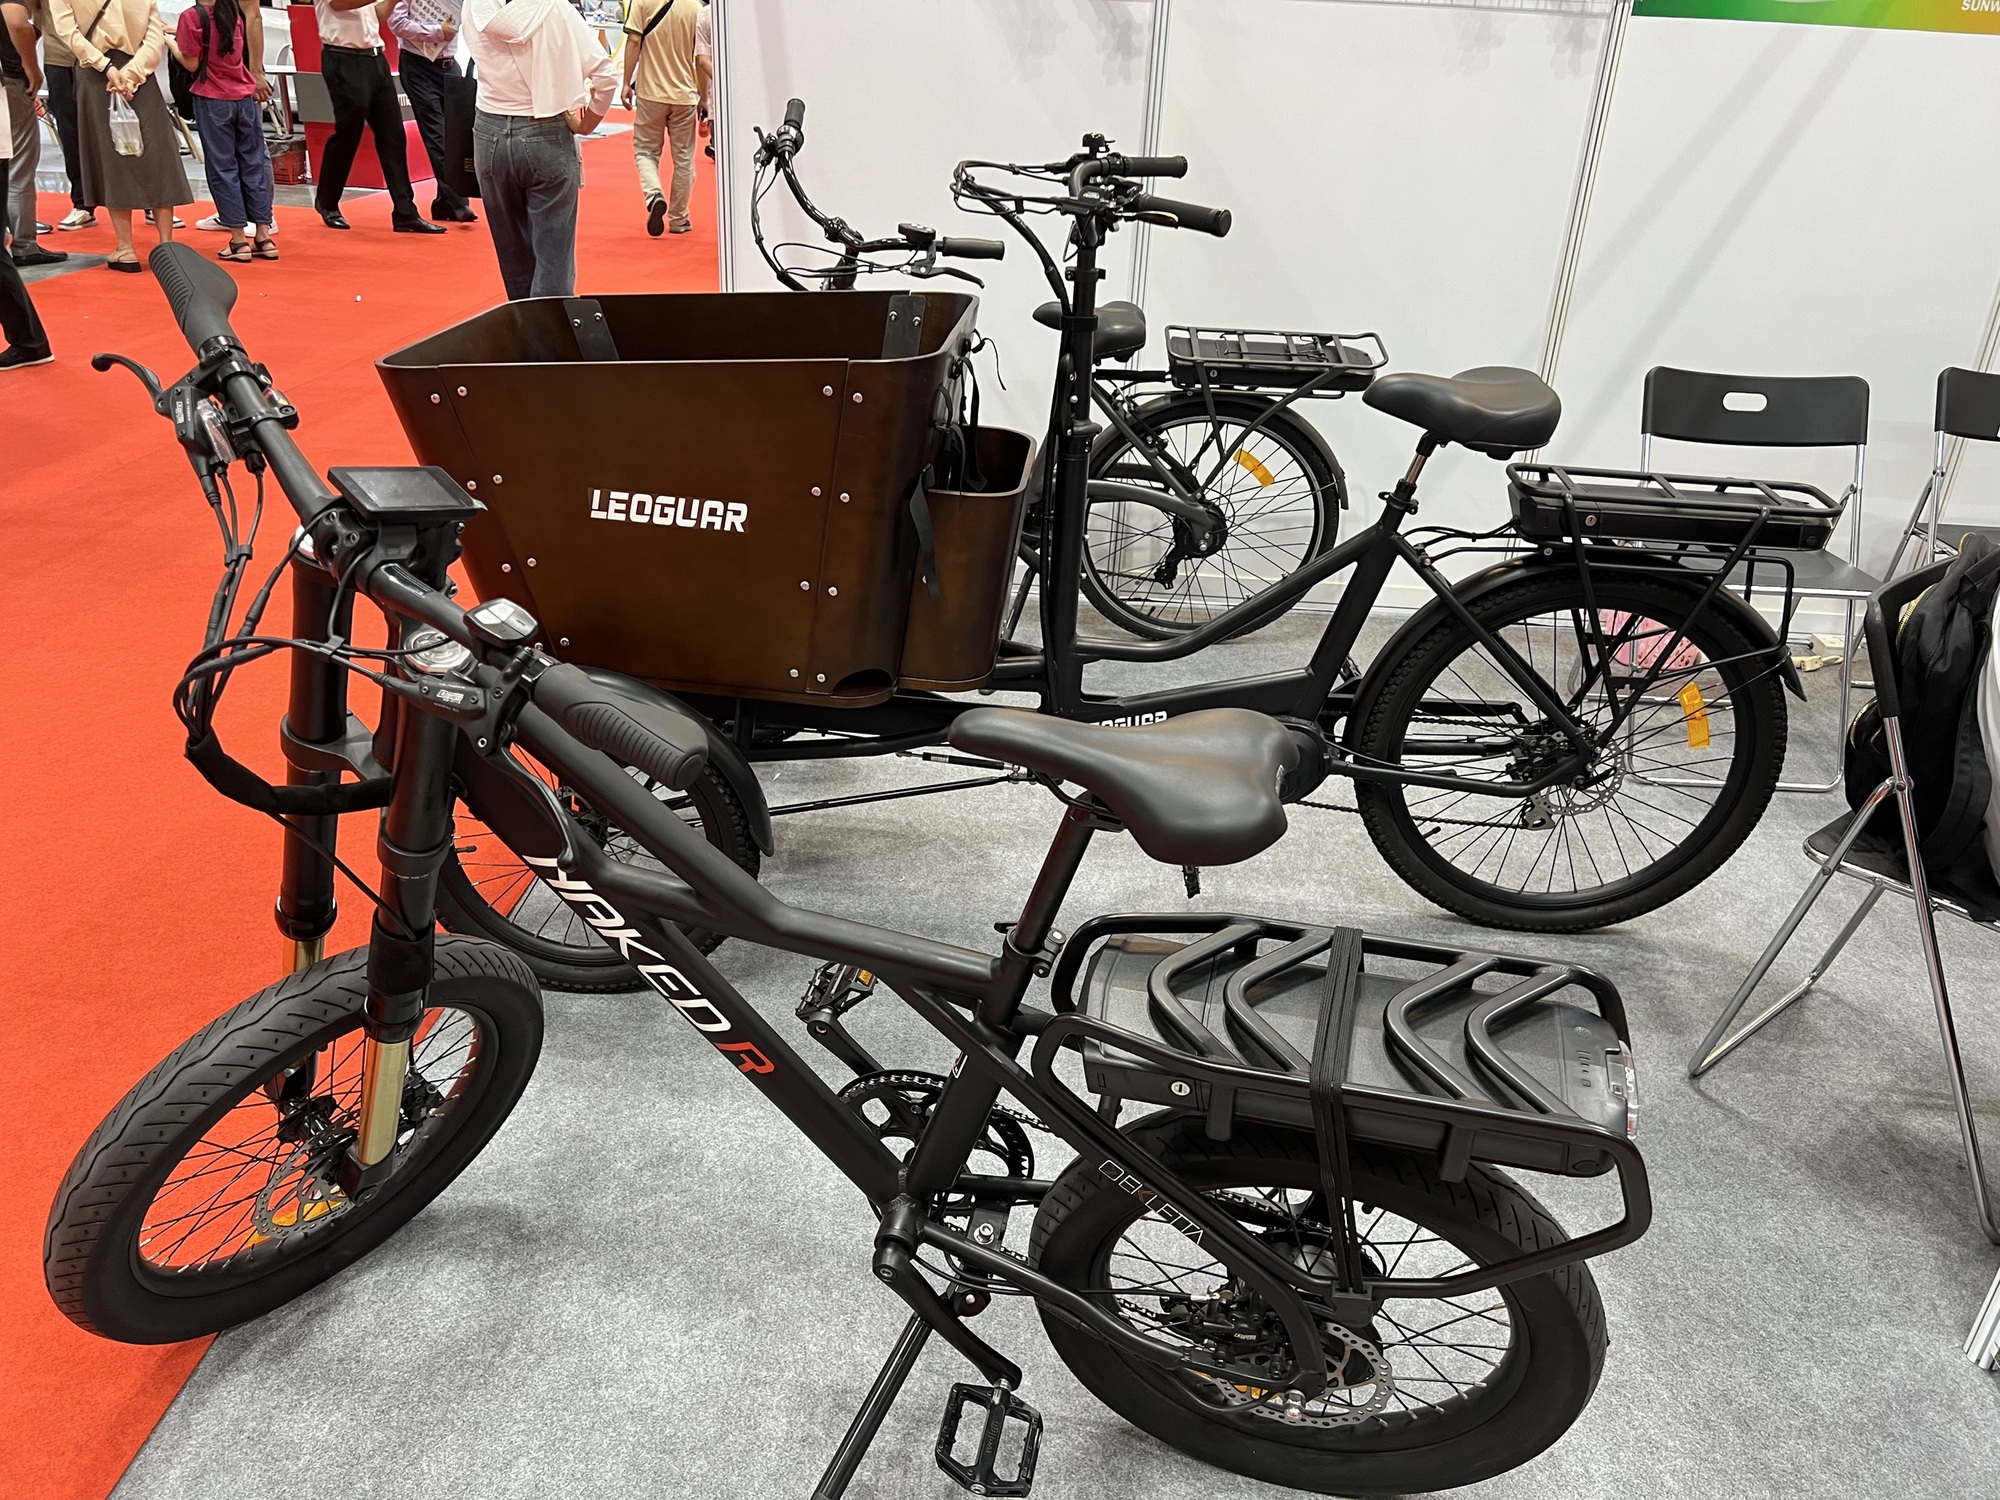 Xe máy, xe đạp điện thương hiệu Trung Quốc 